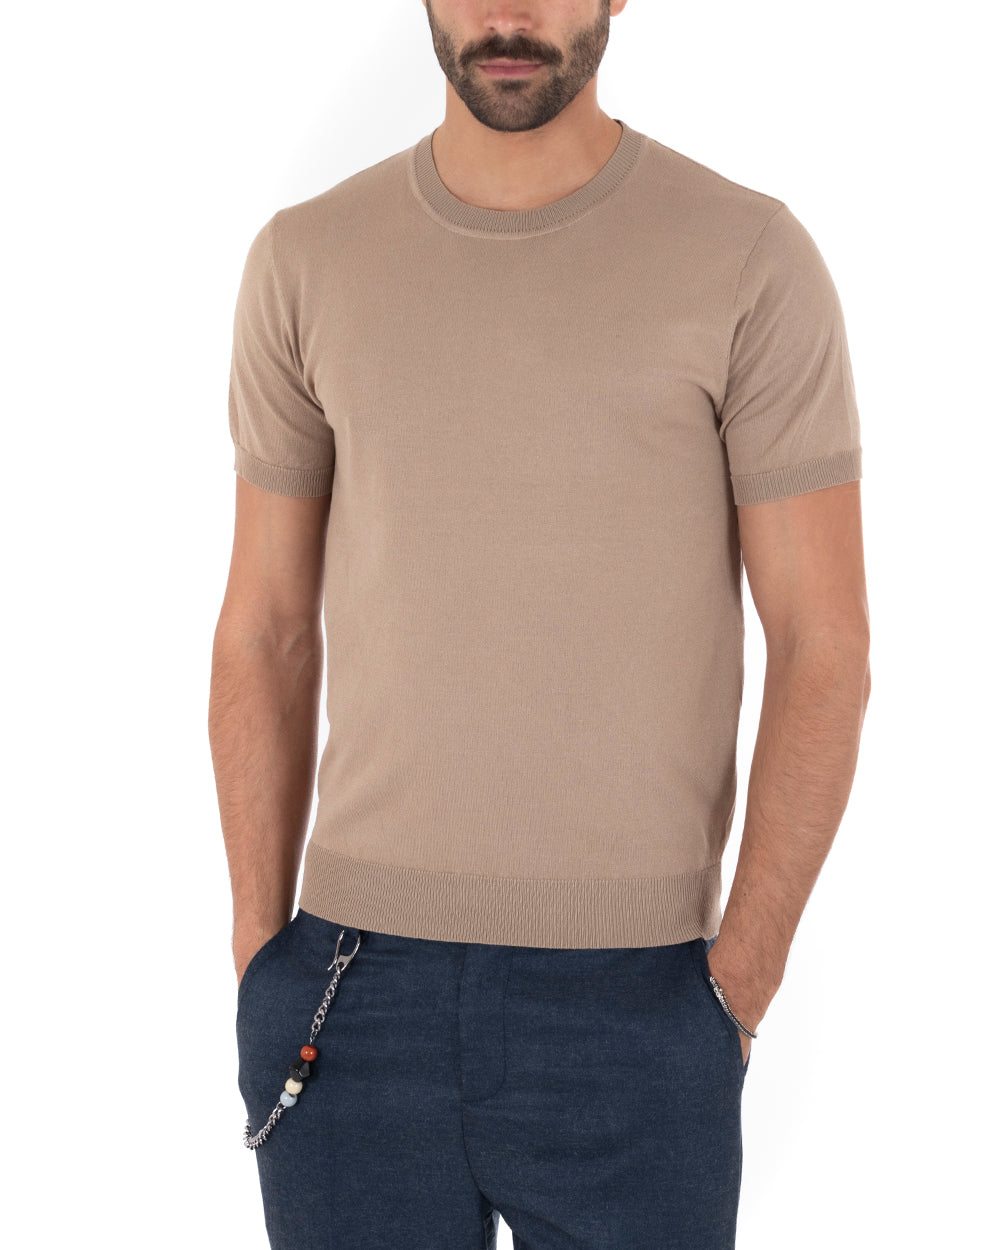 T-Shirt Uomo Manica Corta Tinta Unita Camel Girocollo Filo Casual GIOSAL-TS3053A